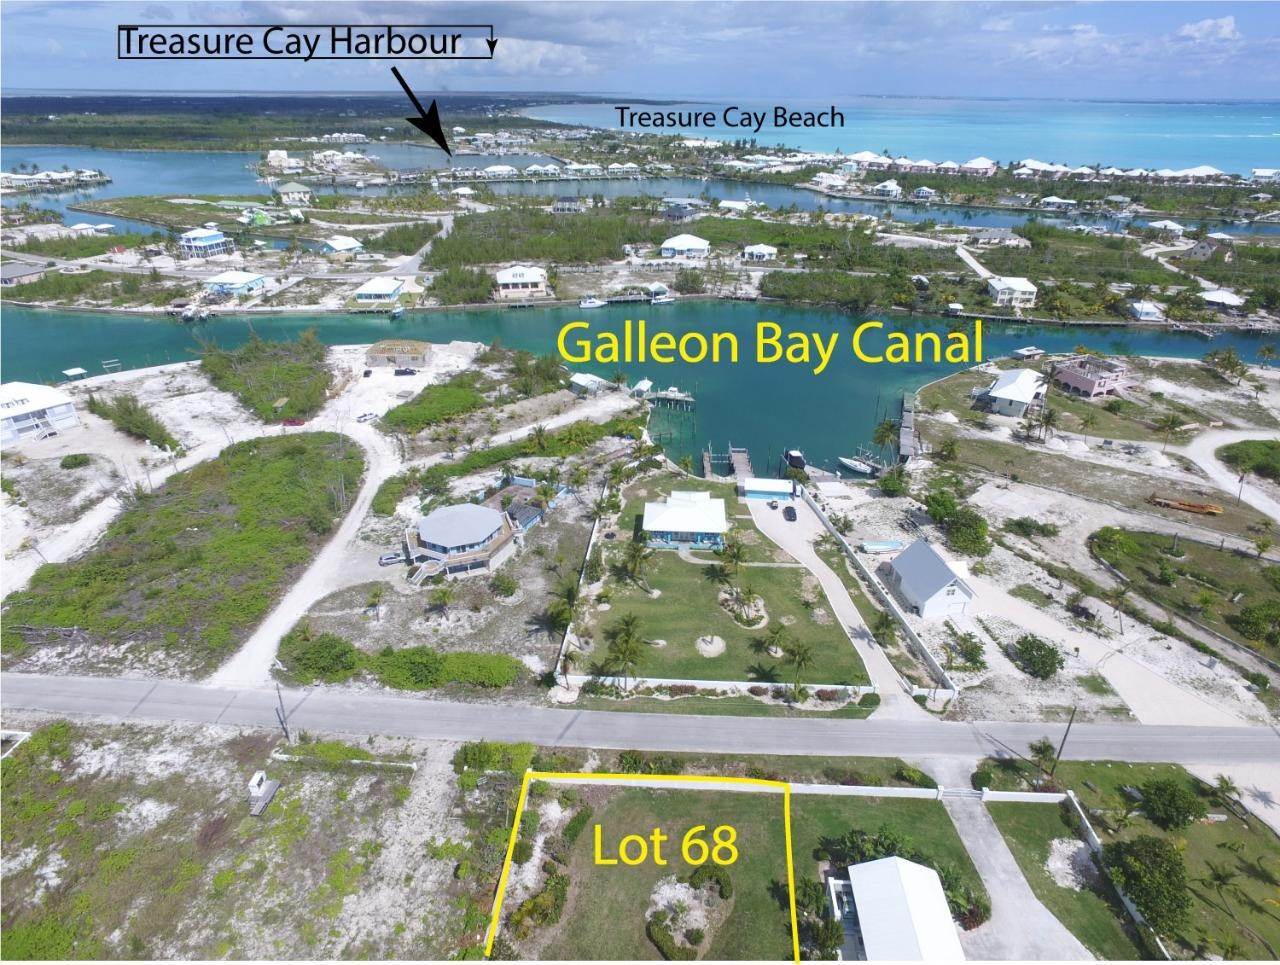 8. Lots / Acreage for Sale at Windward Beach, Treasure Cay, Abaco, Bahamas